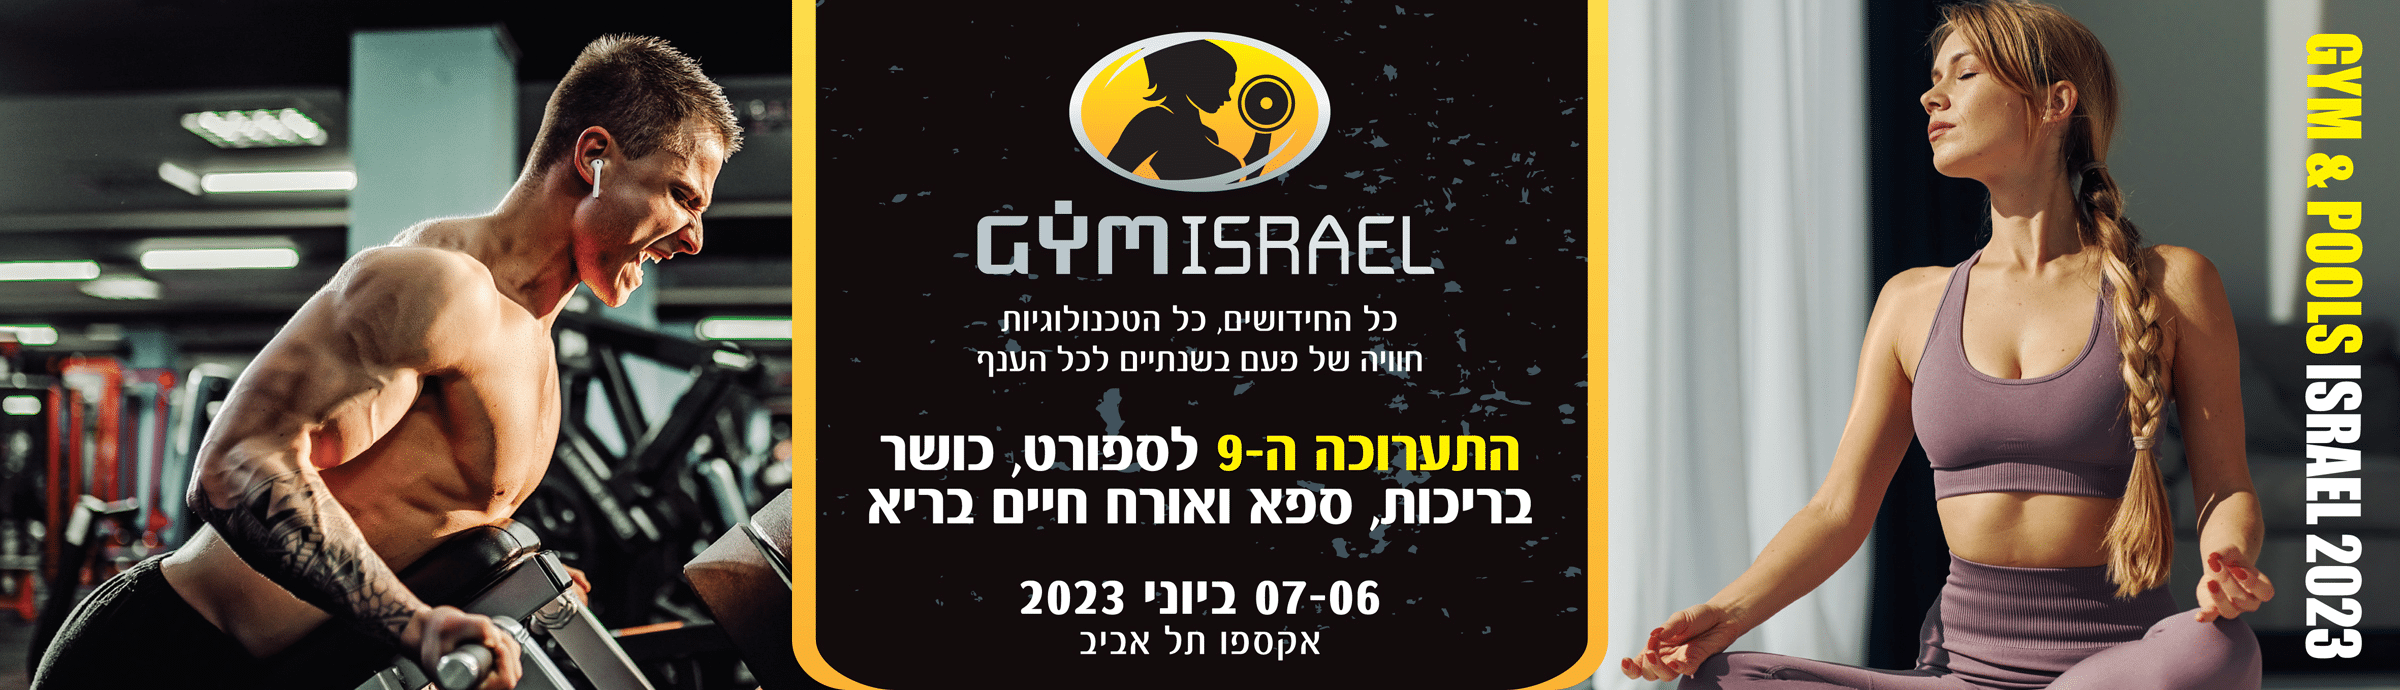 GYM ISRAEL - התערוכה המקצועית ה-9 לספורט, כושר, בריכות, ספא, ואורח חיים בריא